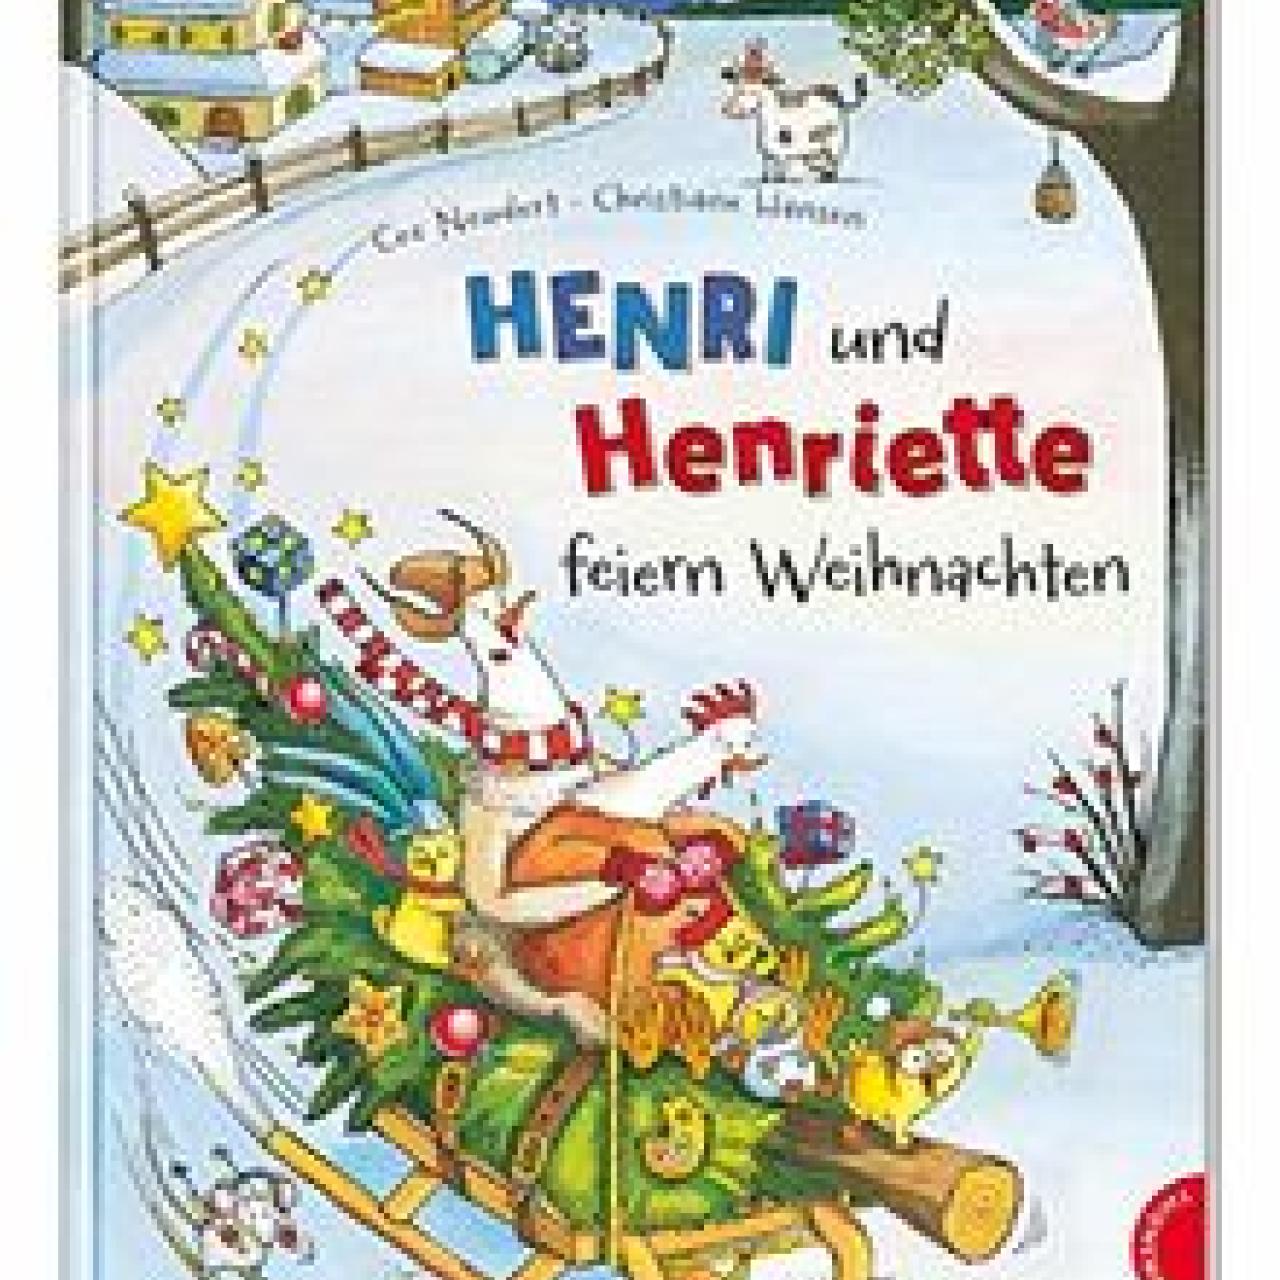 Henri und Henriette feiern Weihnachten - Buchcover